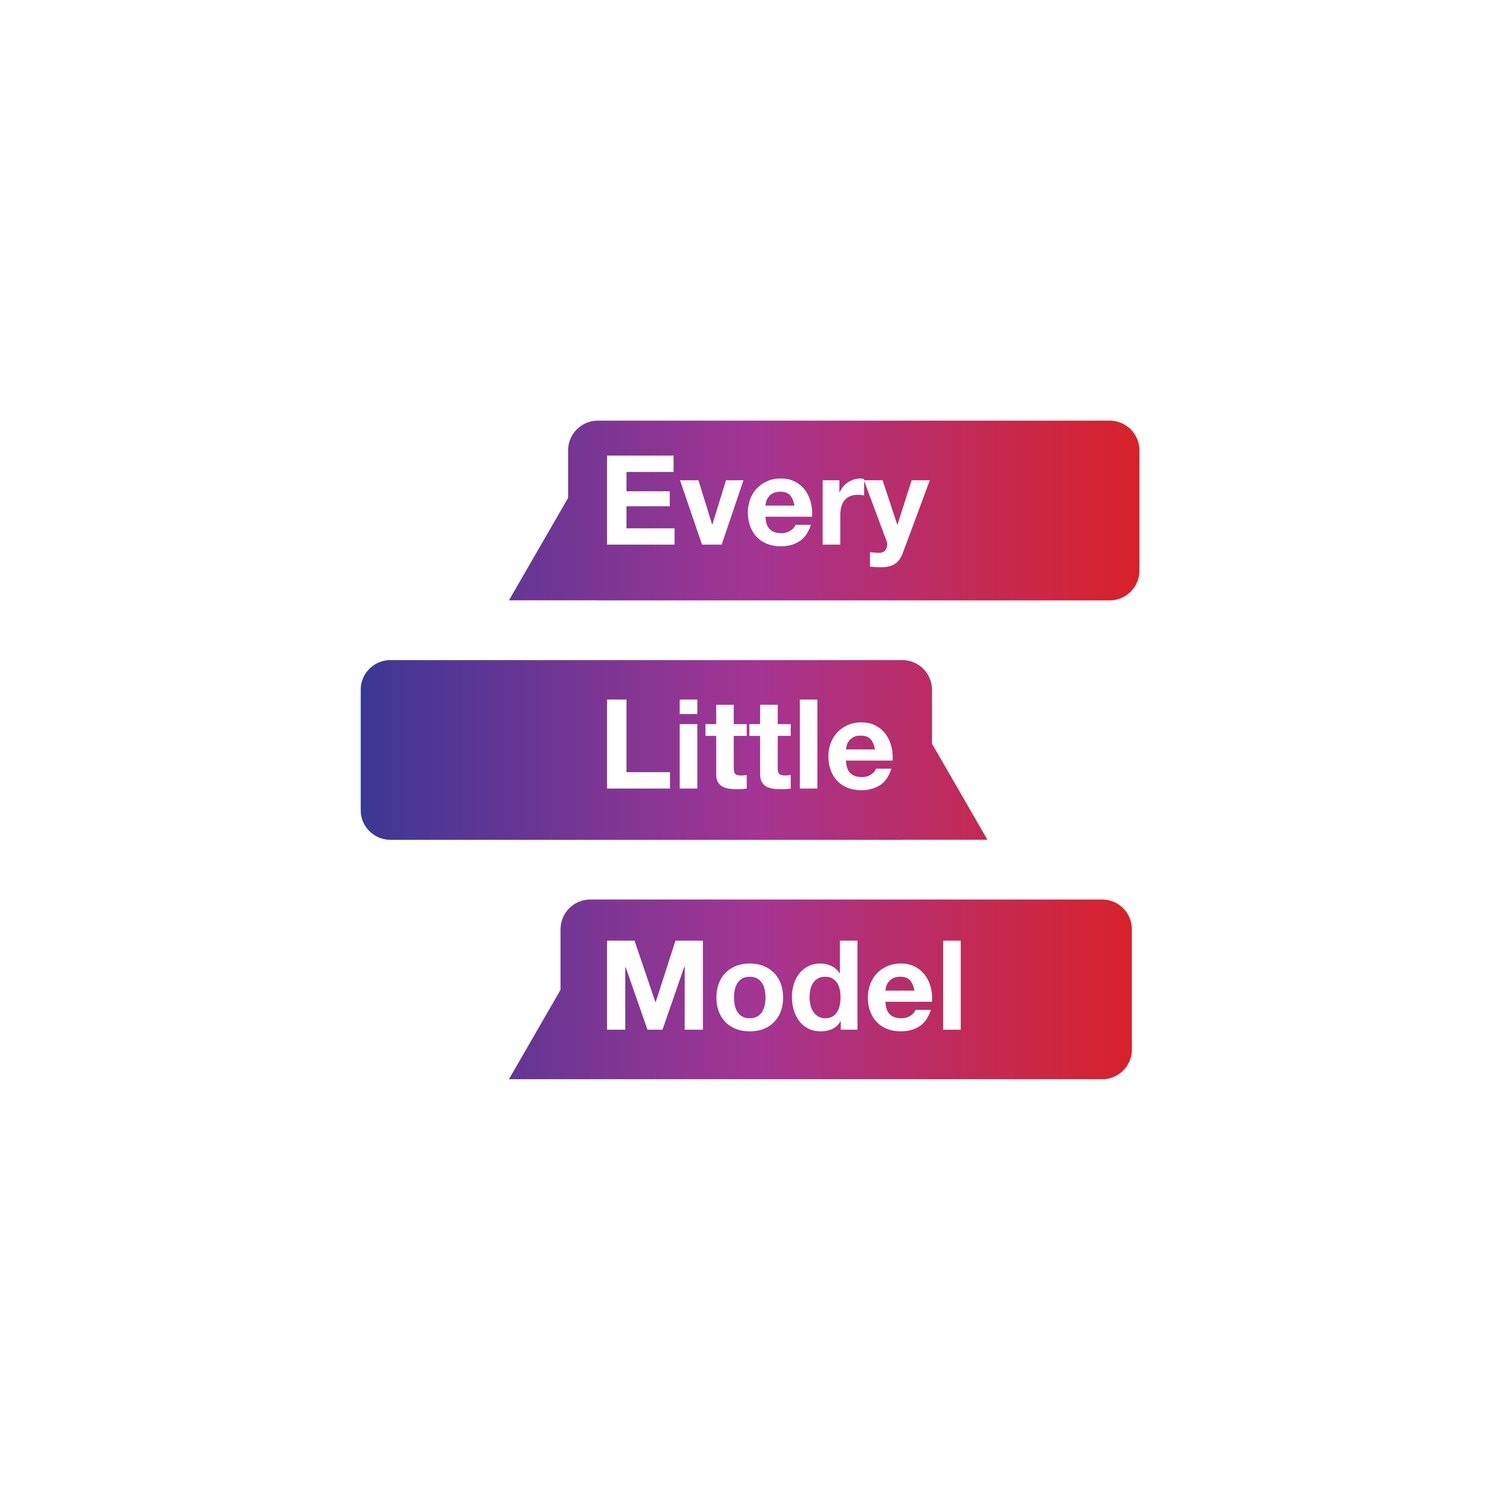 Every Little Model